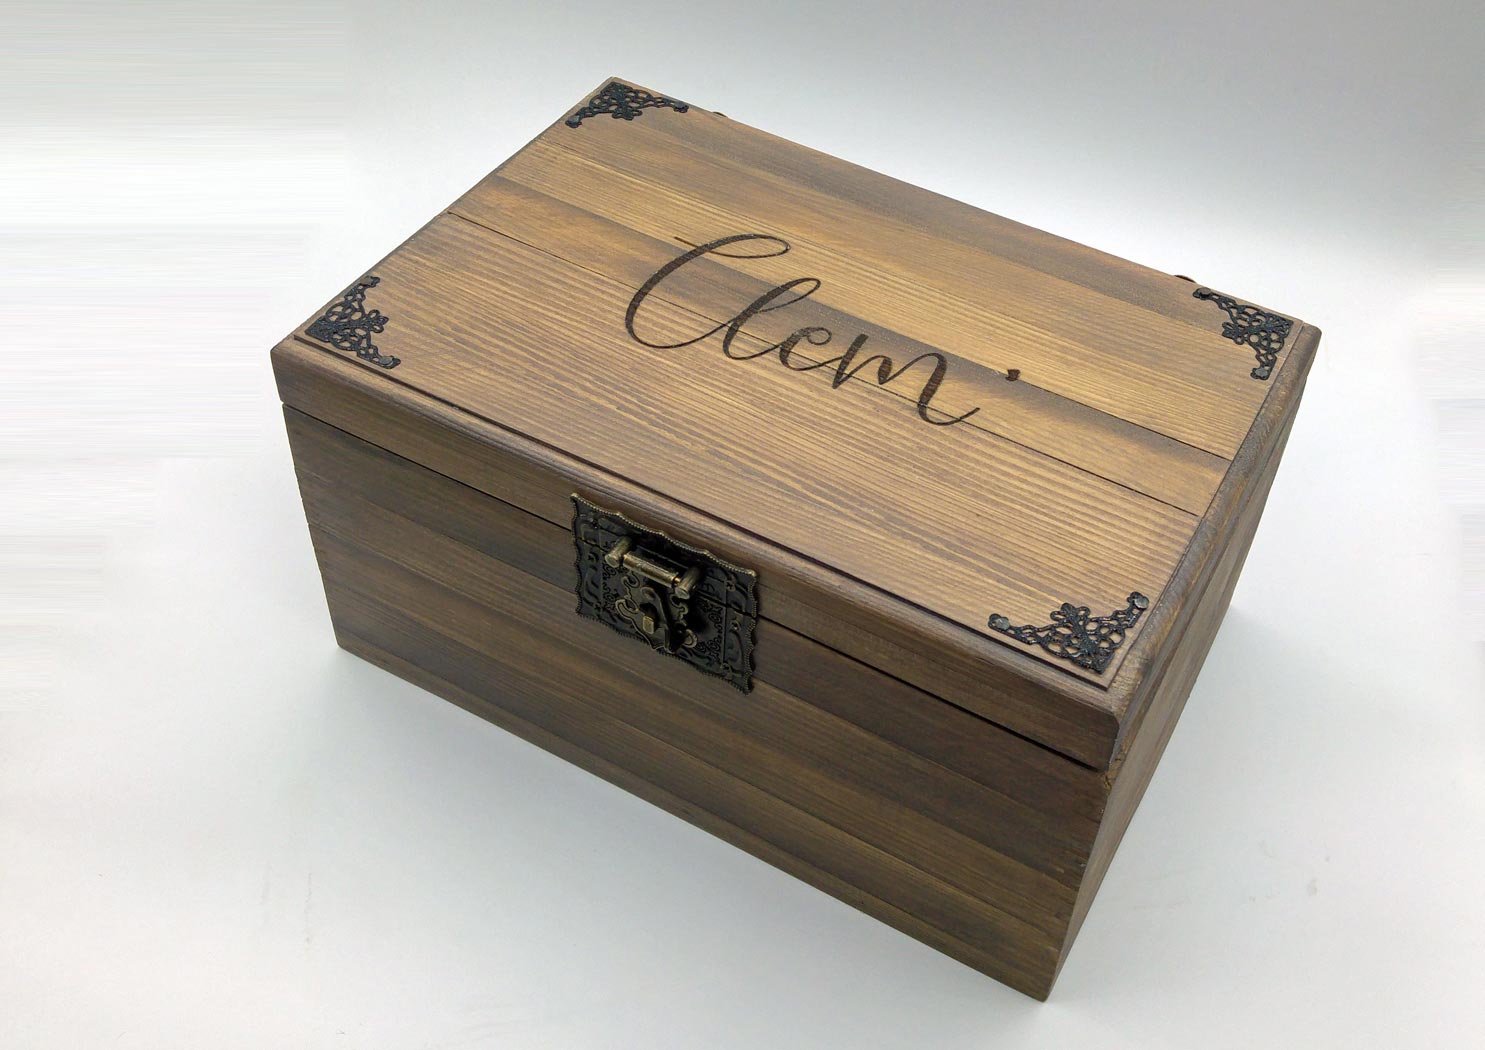 Plumier, boîte en bois personnalisable, fabrication française